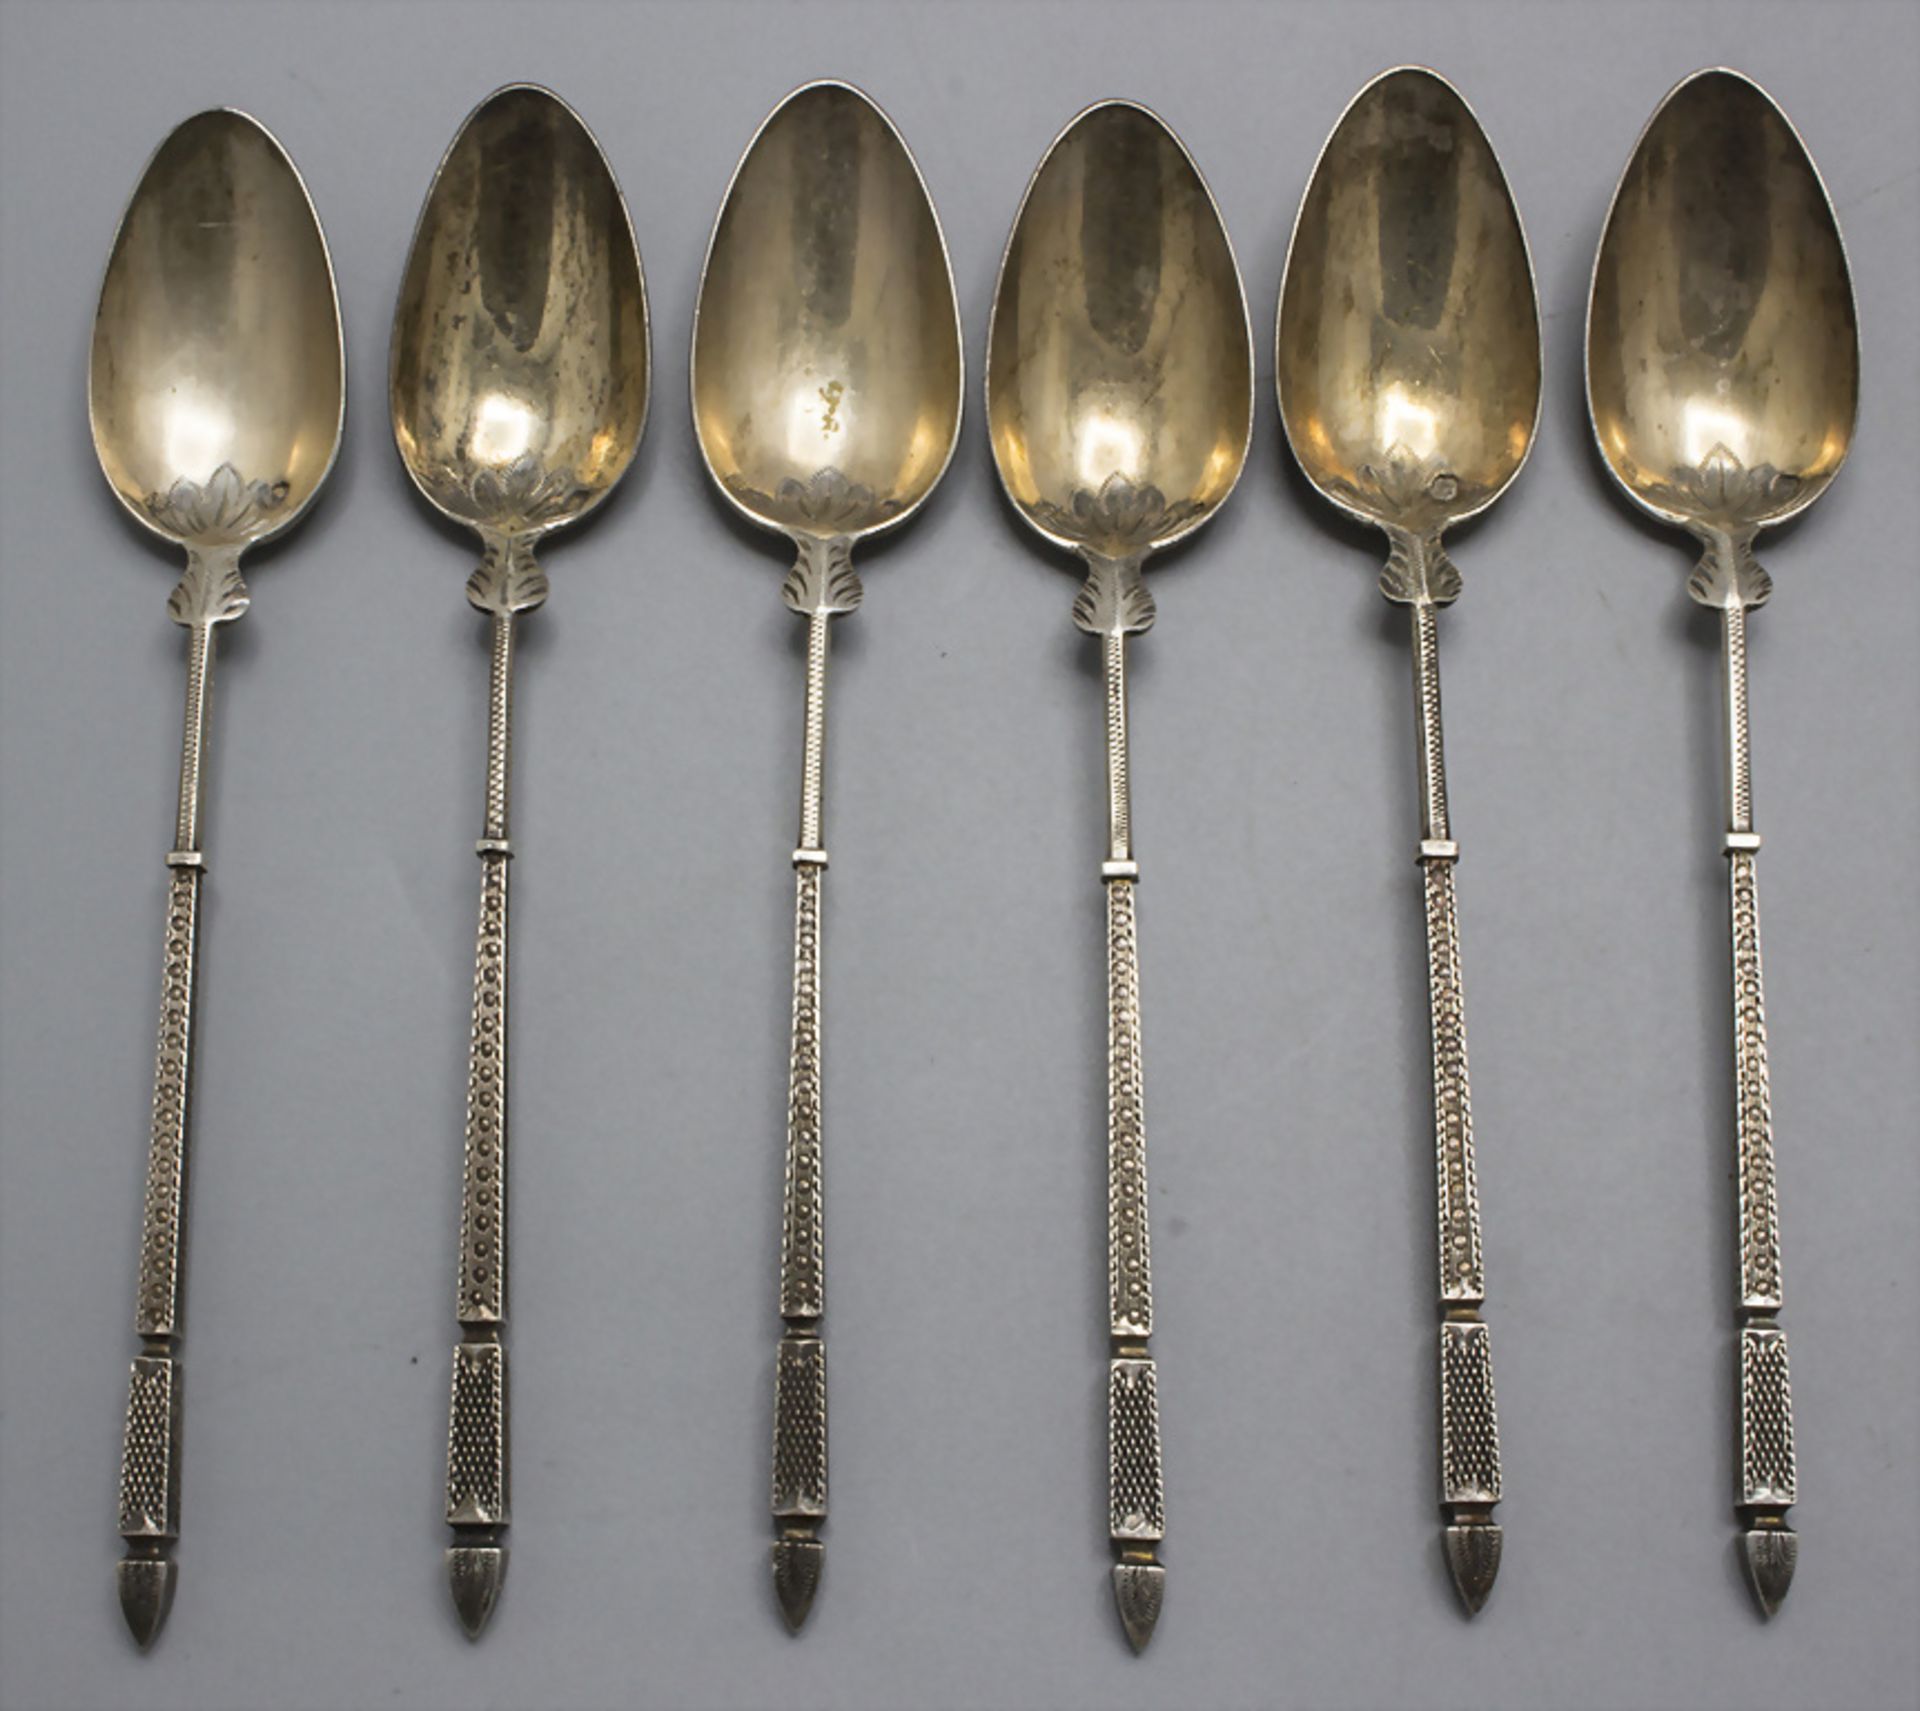 6 Konfitüren Löffel / 6 silver jam spoons / 6 cuillères à confiture en argent massif, Paris, ...